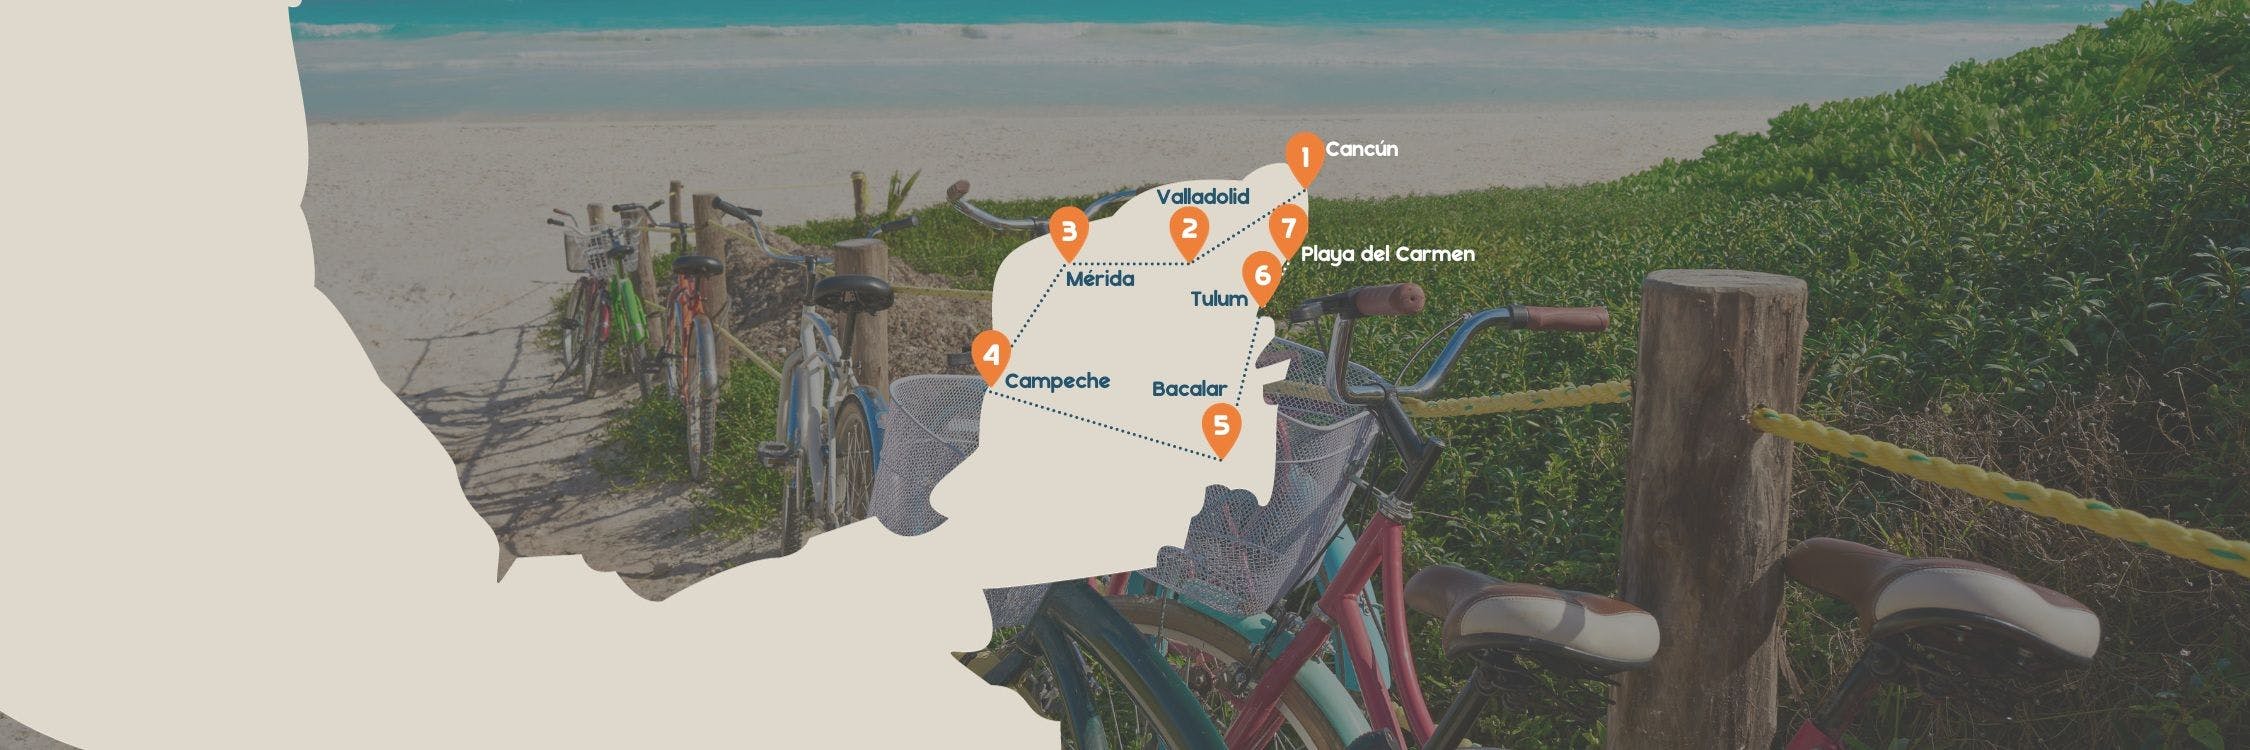 Routekaart roadtrip Yucatan desktop